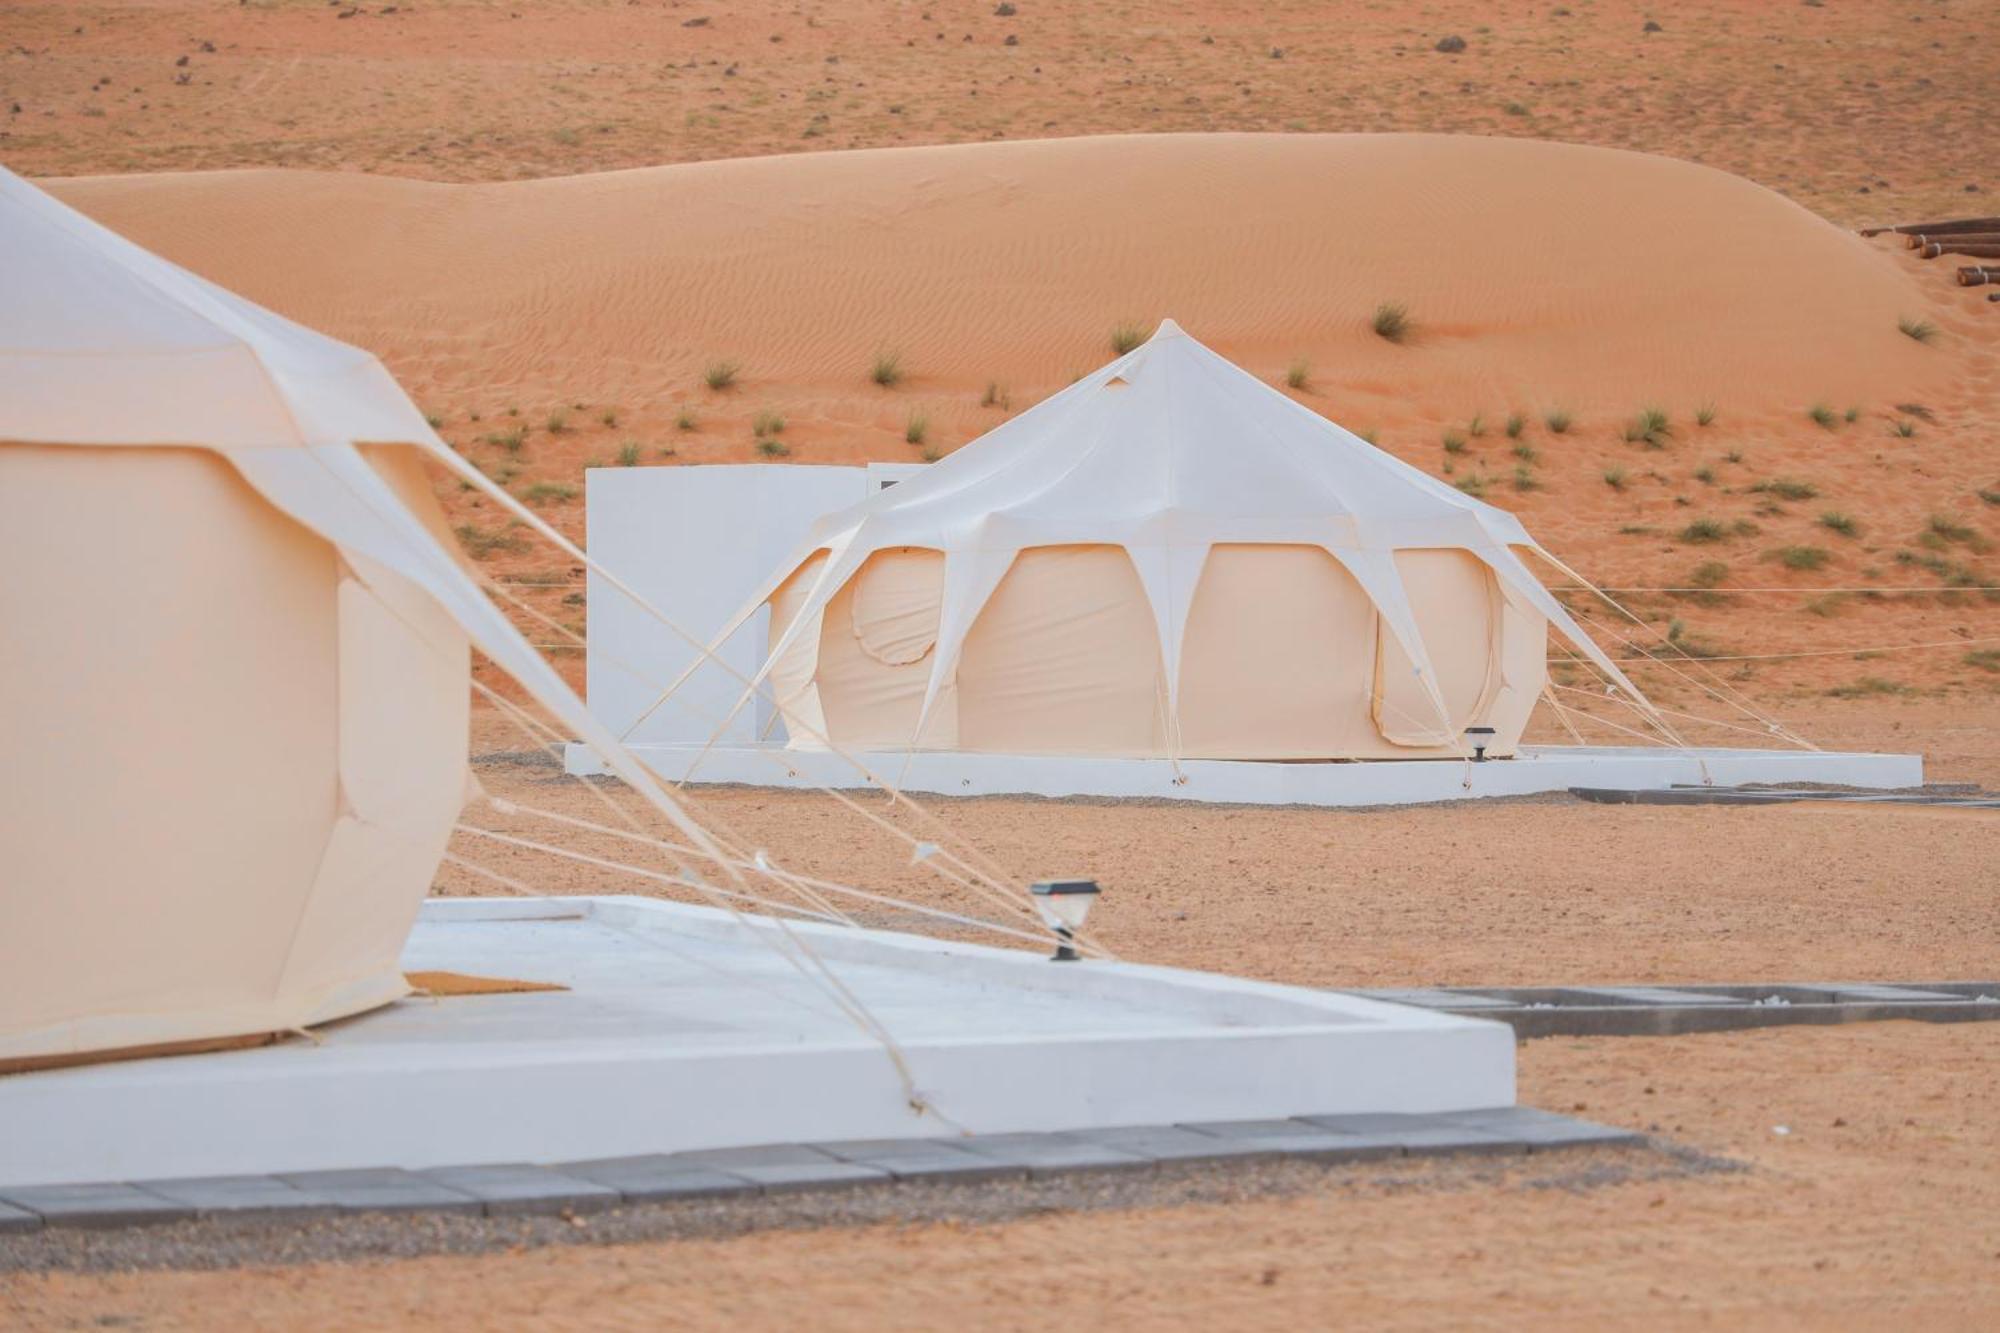 Safari Desert Camp Shahiq Exterior photo